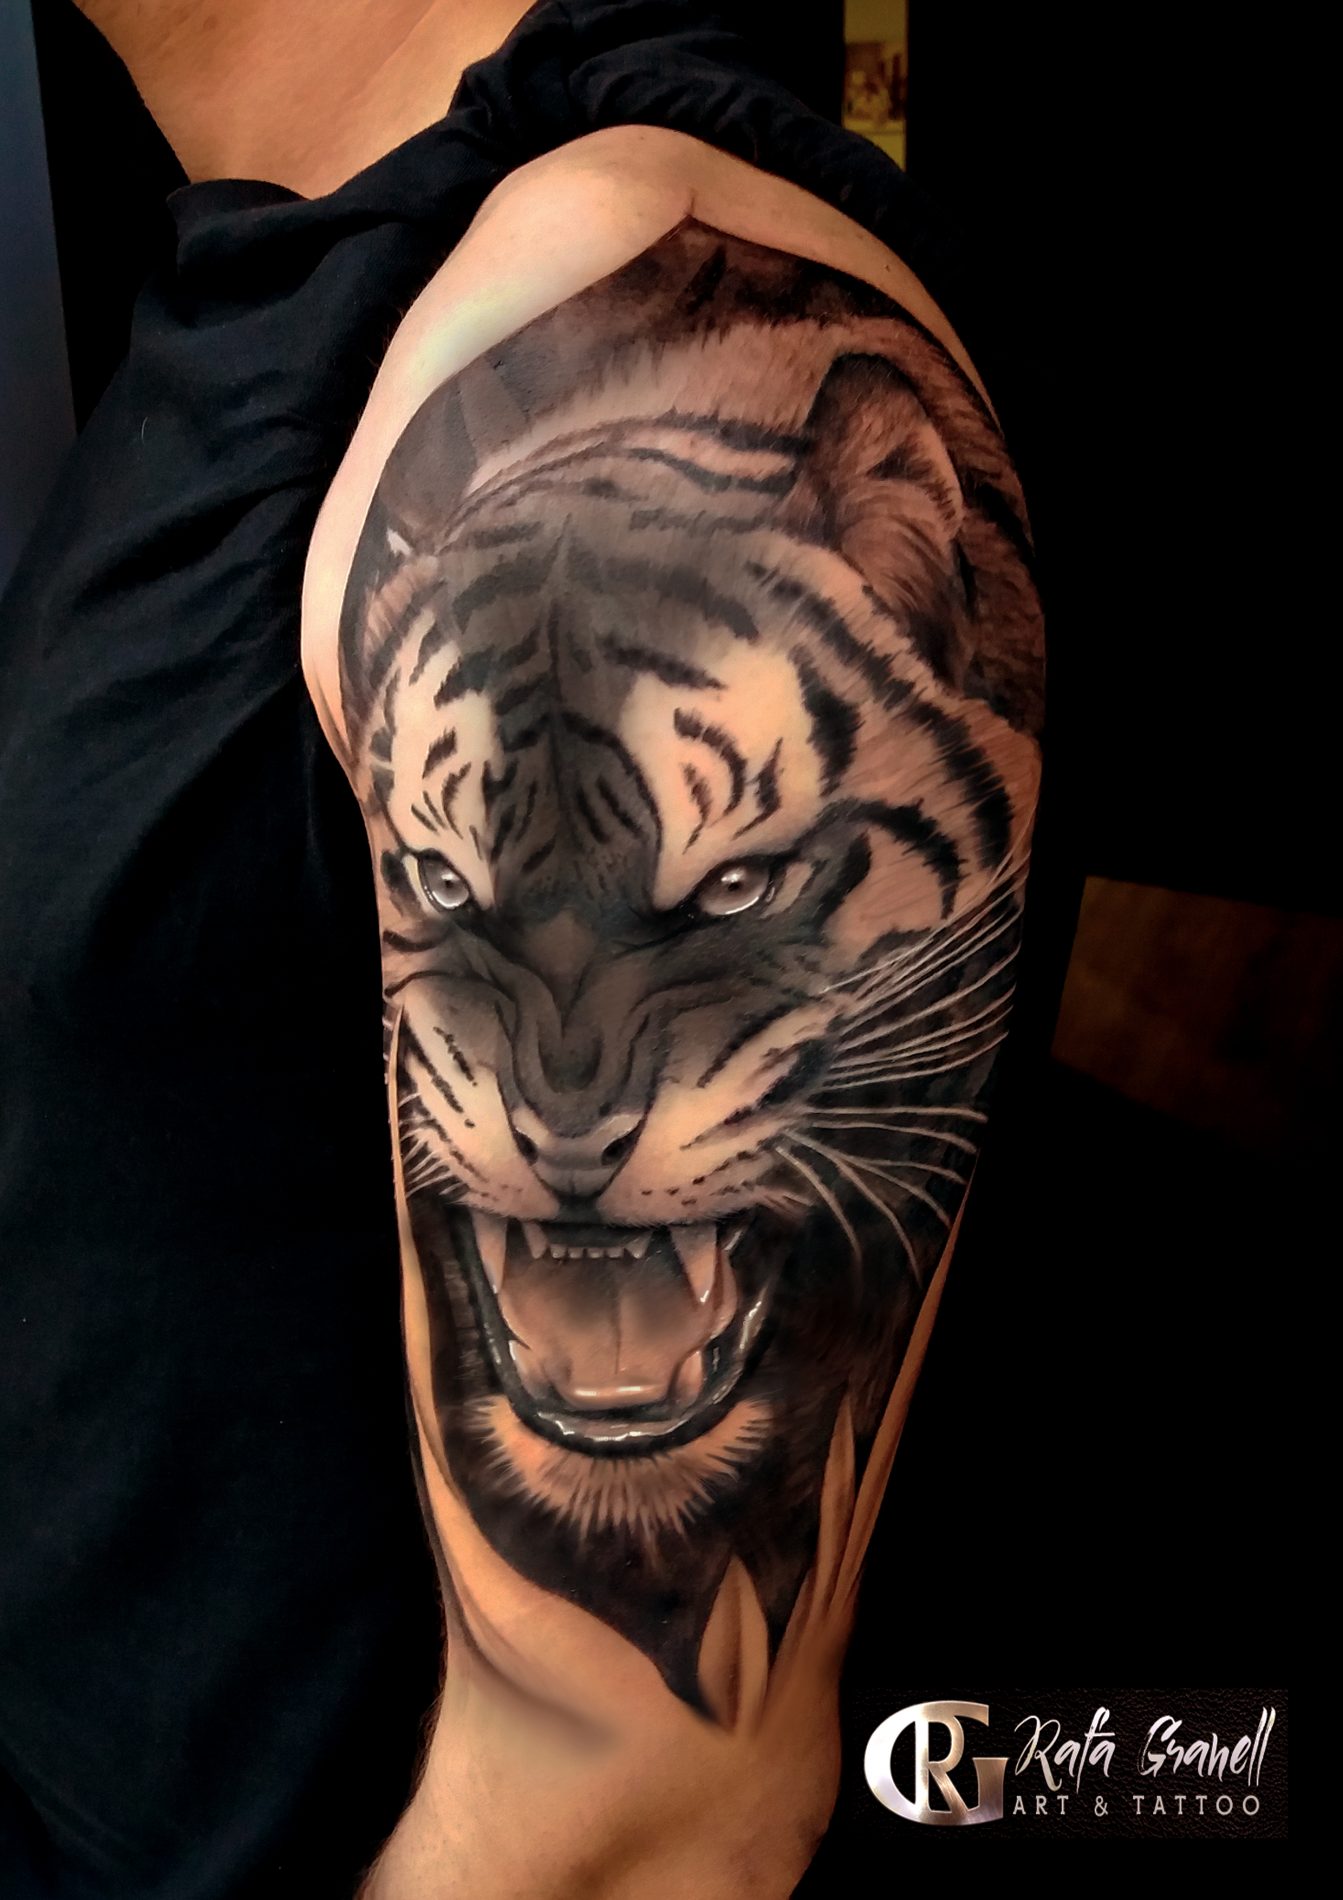 tatuaje#tigre#impresionante#realismo#tatuajes#realistas#valencia#blanco#negro#mirada#felinos#tatuador#valenciano#tatuadores#españoles#español#brazo#hombro#valencianos#tatuaje#realista#rafa#granell#rgtattoo#